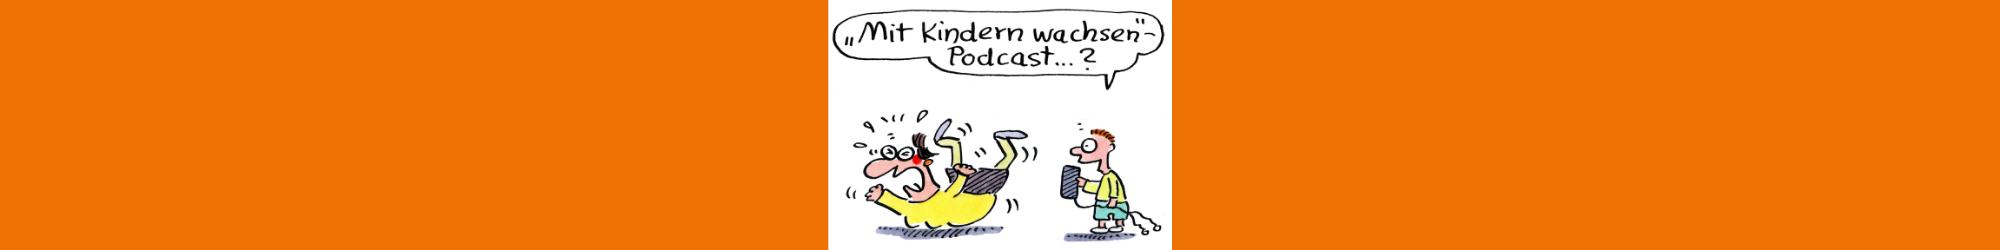 MKW_Podcast_MitKindernwachsen